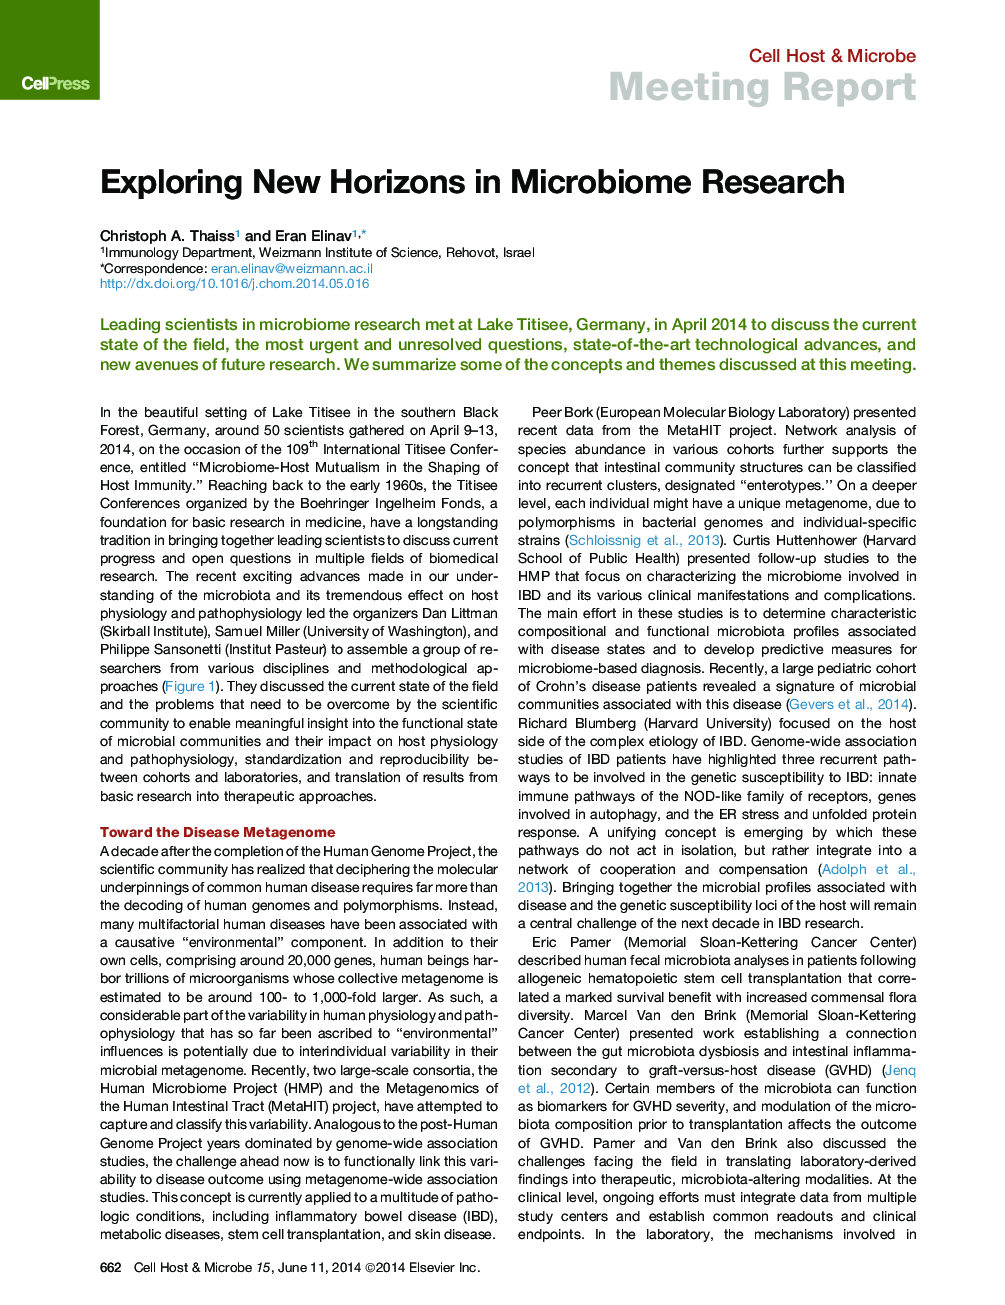 بررسی افق های جدید در تحقیقات میکروبیومی 